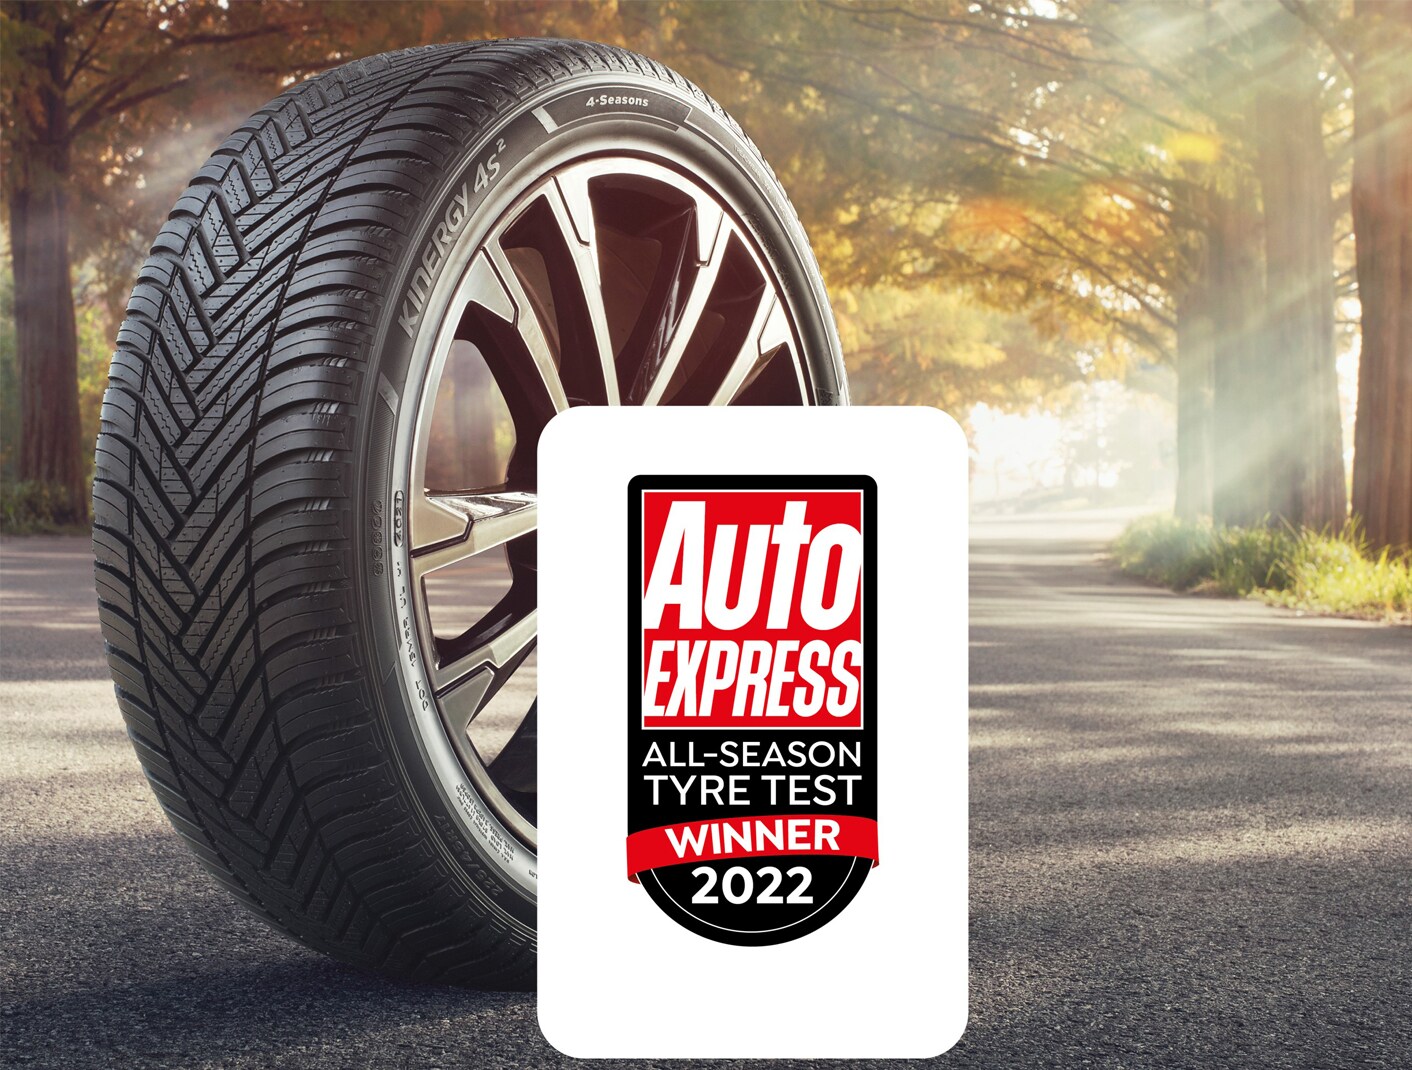 韩泰在《Auto Express》全季轮胎测试中连续两年赢得优胜